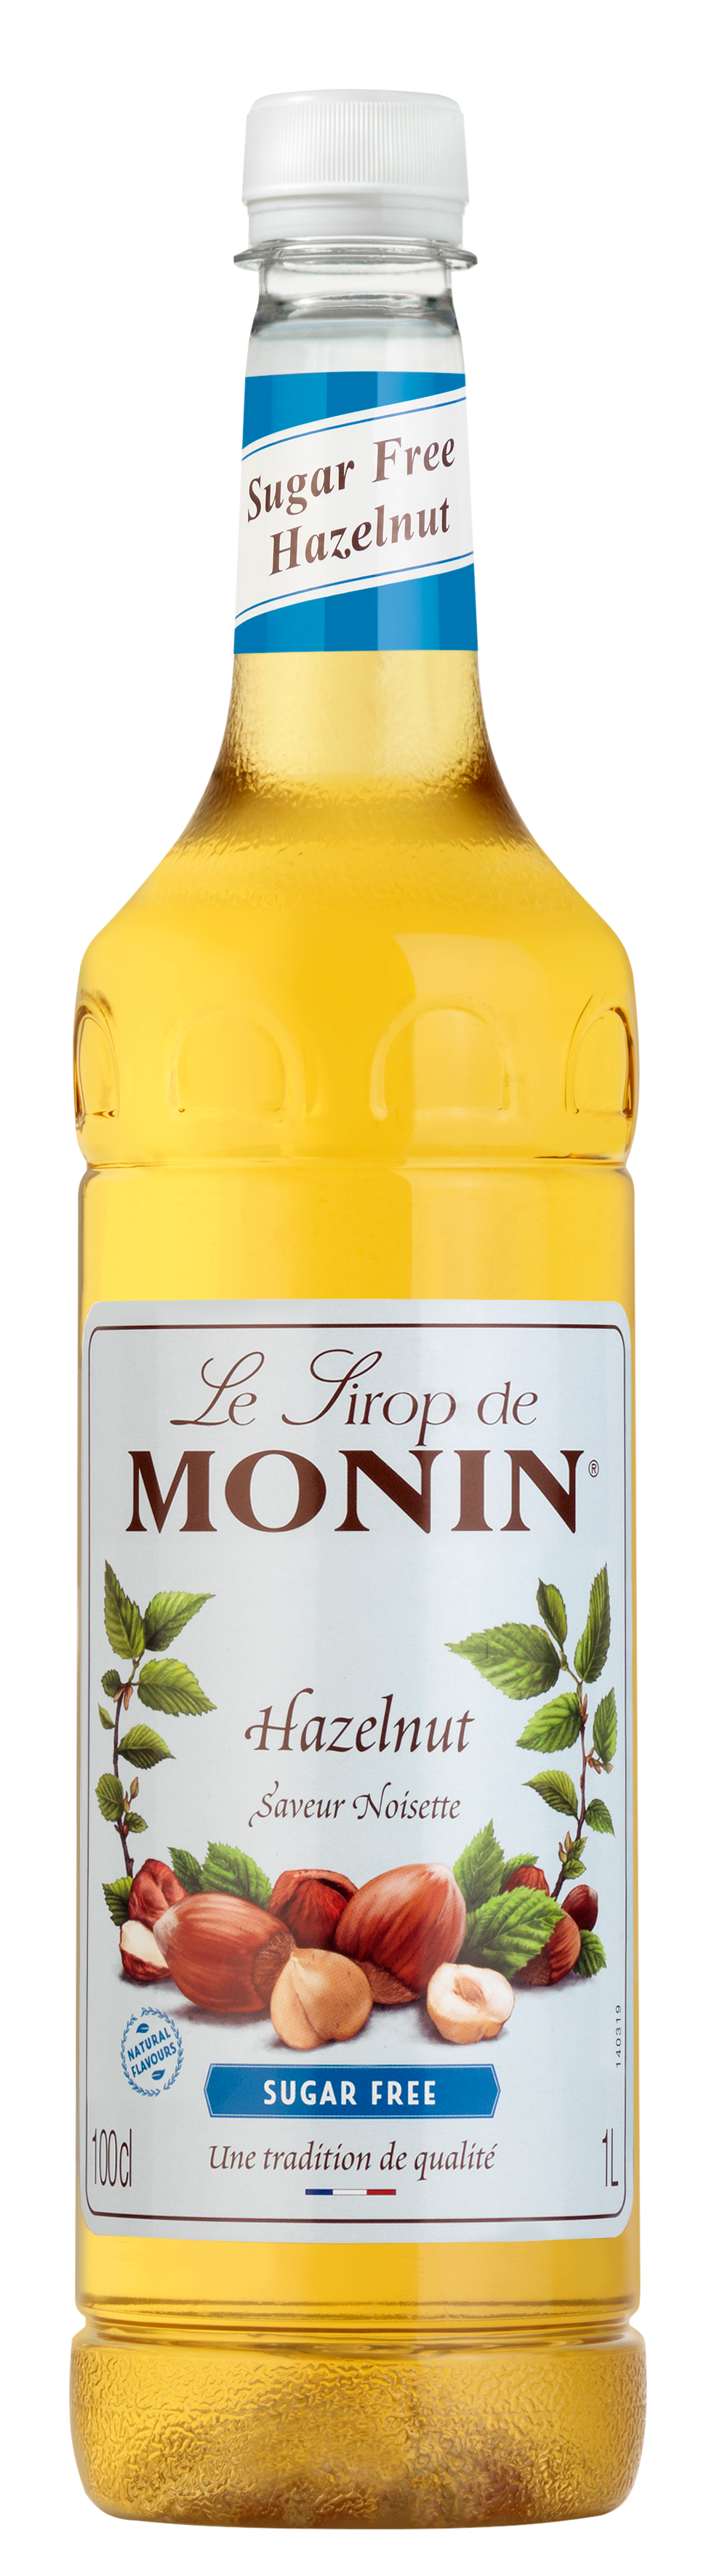 MONIN Sugar Free Hazelnut Syrup 1L